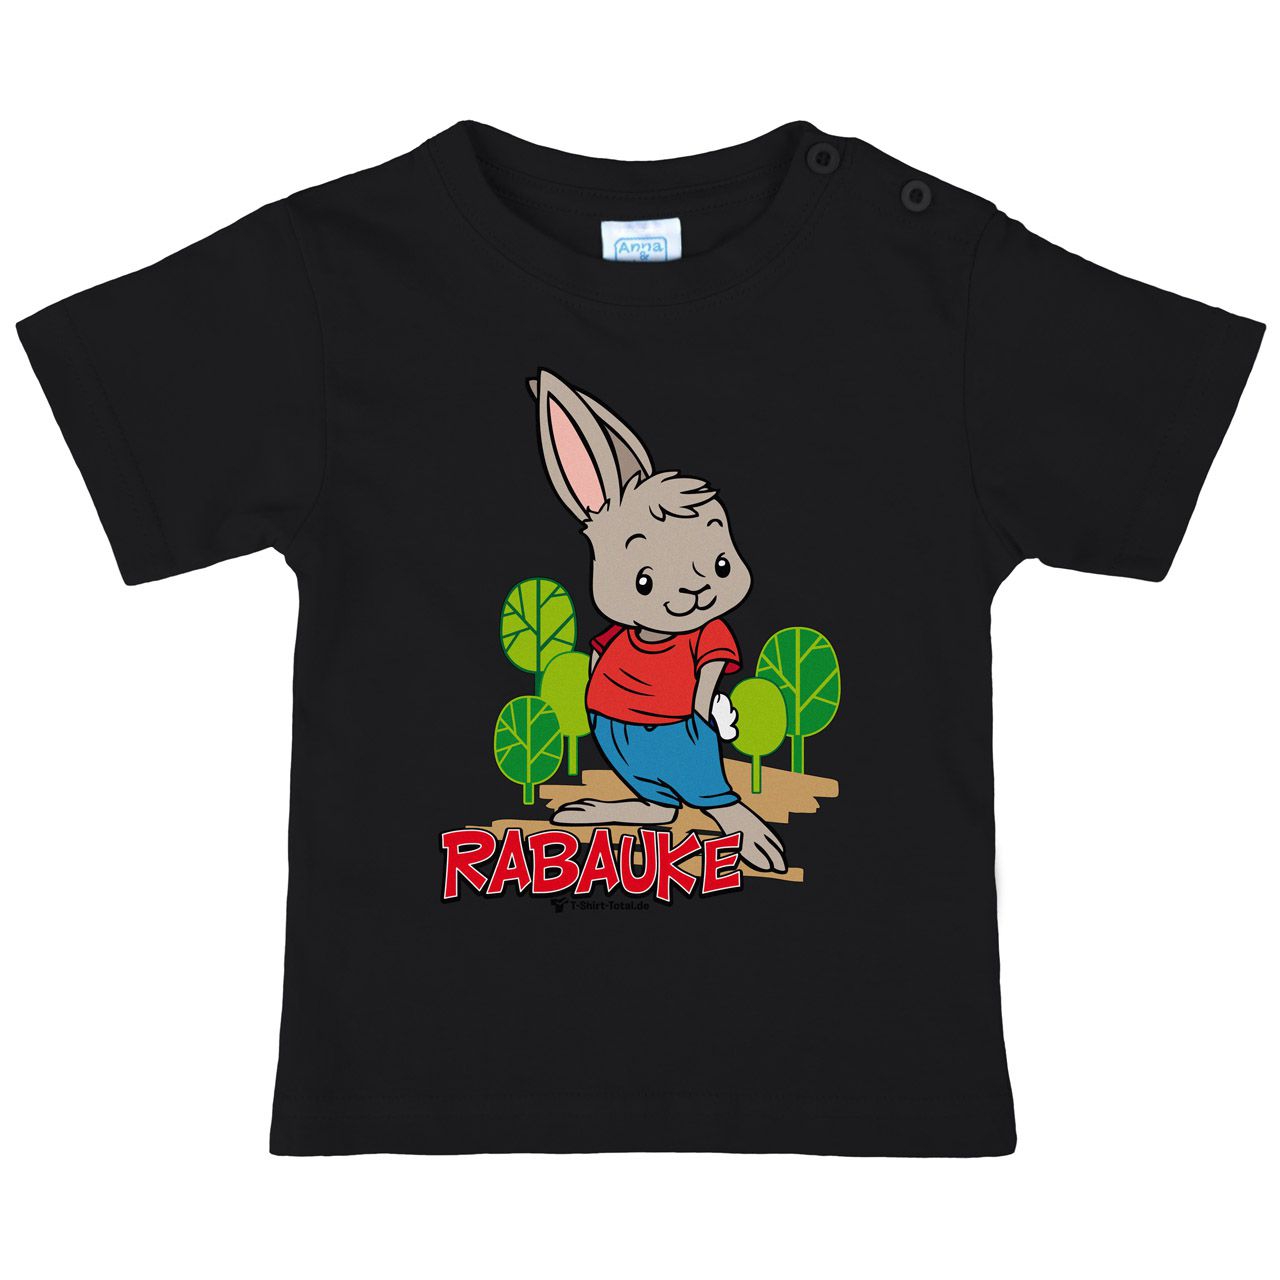 Rabauke Kinder T-Shirt schwarz 110 / 116